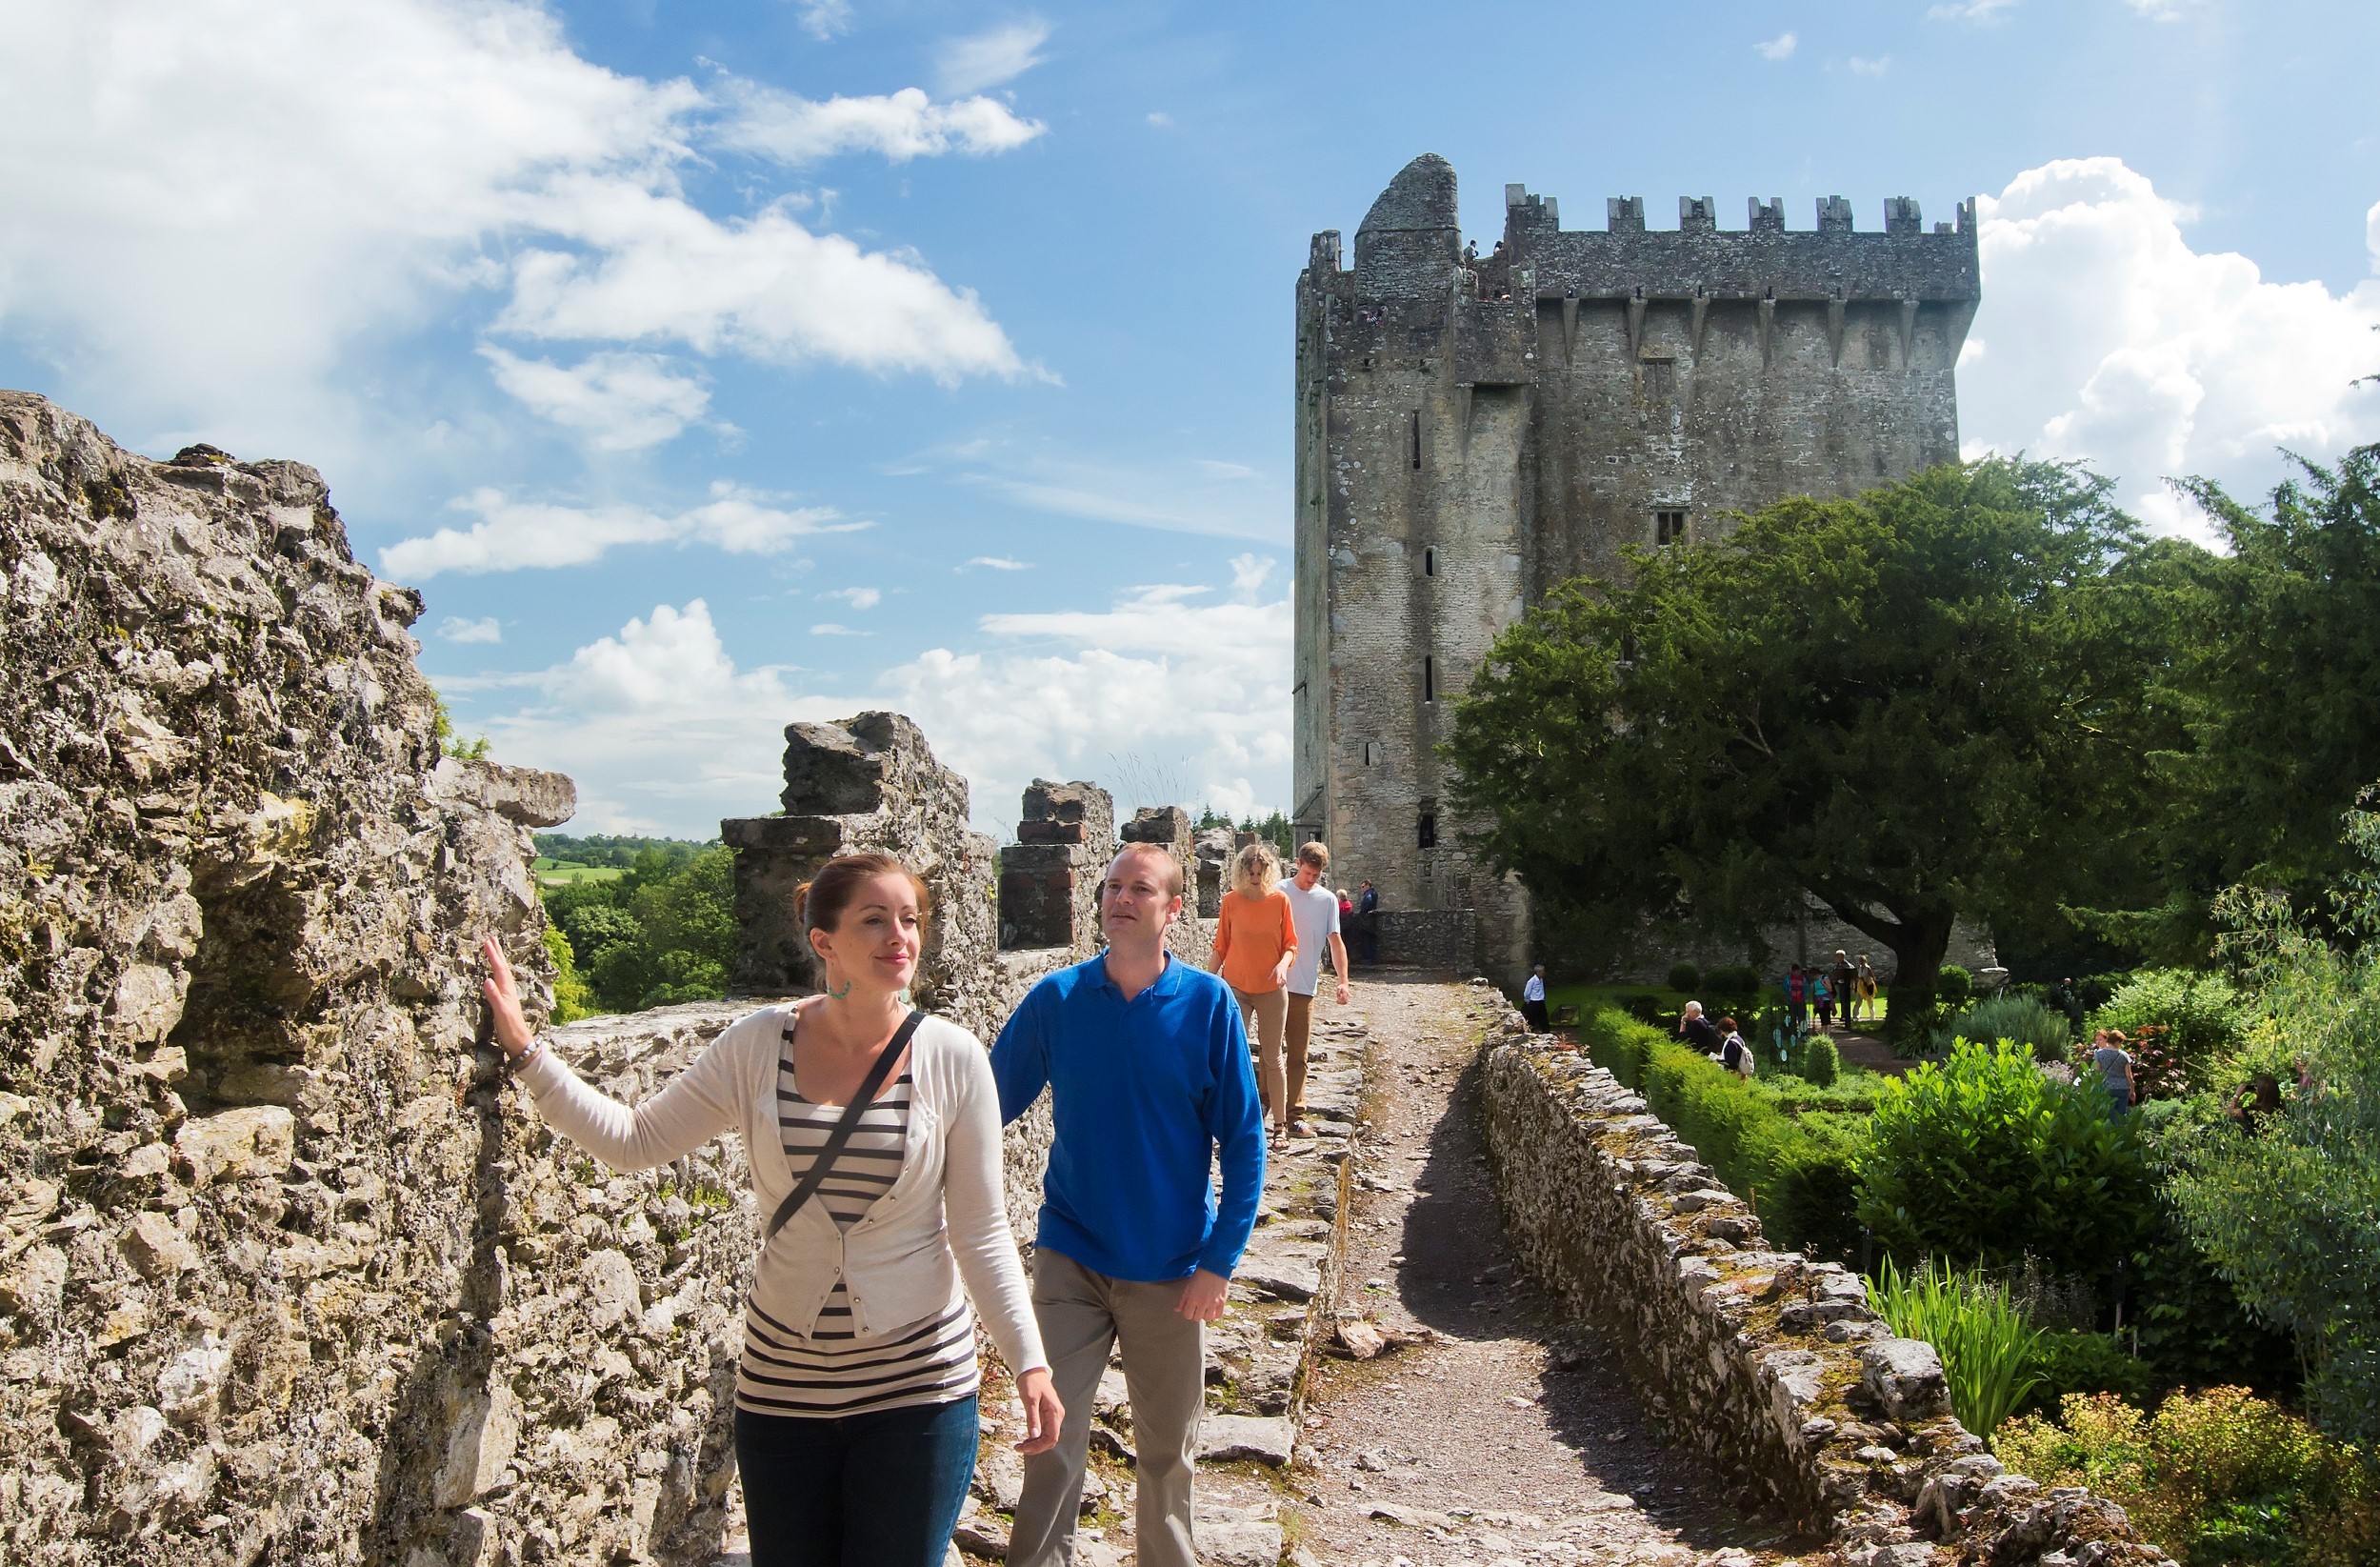 距離 Cork 市區 9 公里的 Blarney 城堡，是當地最受遊客歡迎的古蹟景點。